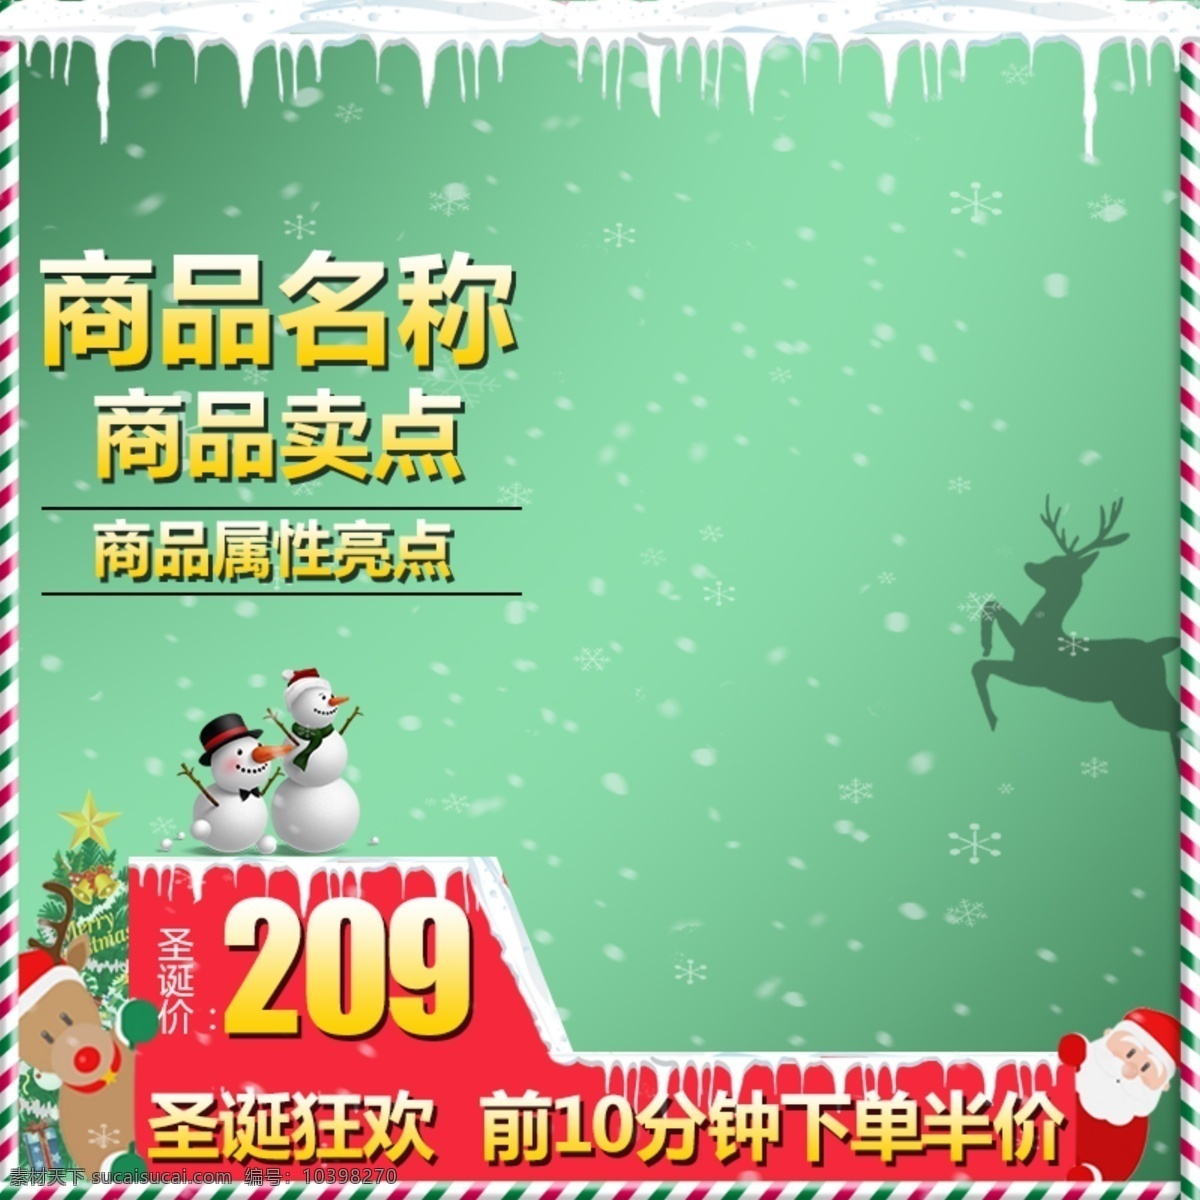 圣诞节 活动 大 促 主 图 模板 促销标签 绿色 主图 天猫 圣诞树 雪人 下雪 雪 淘宝 雪景 圣诞老人 鹿 psd模板 直通车主图 圣诞节主图